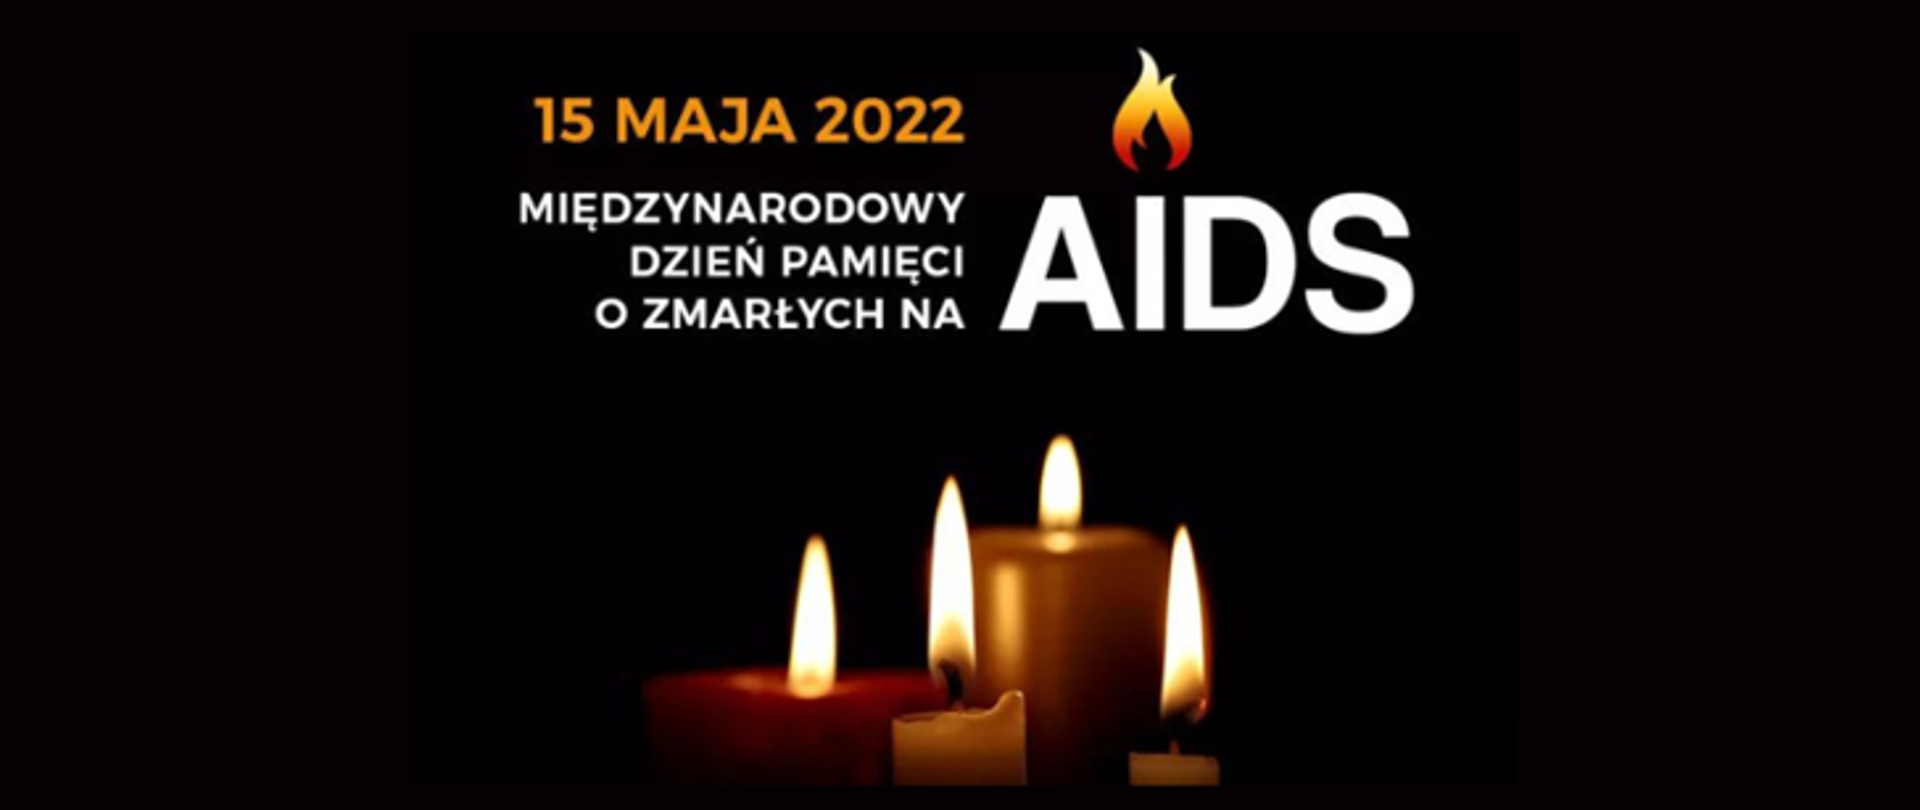 Na grafice w centrum widoczne są świece. Powyżej znajduje się napis: 15 MAJA 2022 MIĘDZYNARODOWY DZIEŃ PAMIĘCI O ZMARŁYCH NA AIDS. Tło jest koloru czarnego.